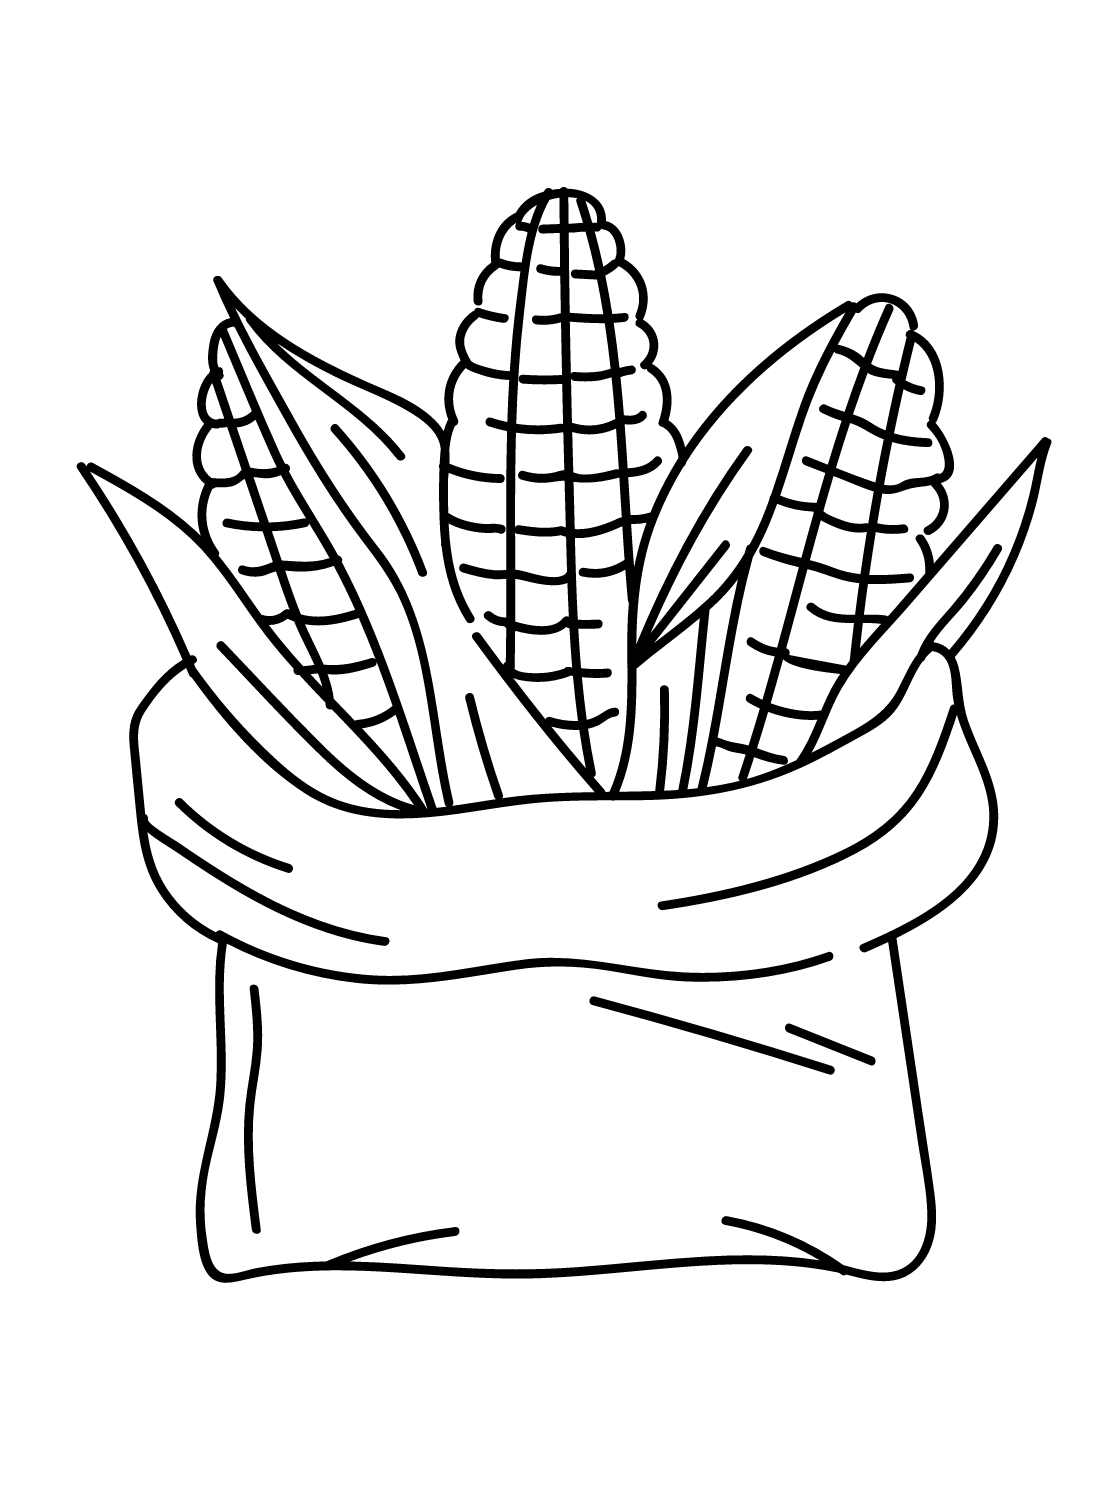 Maissack aus Mais